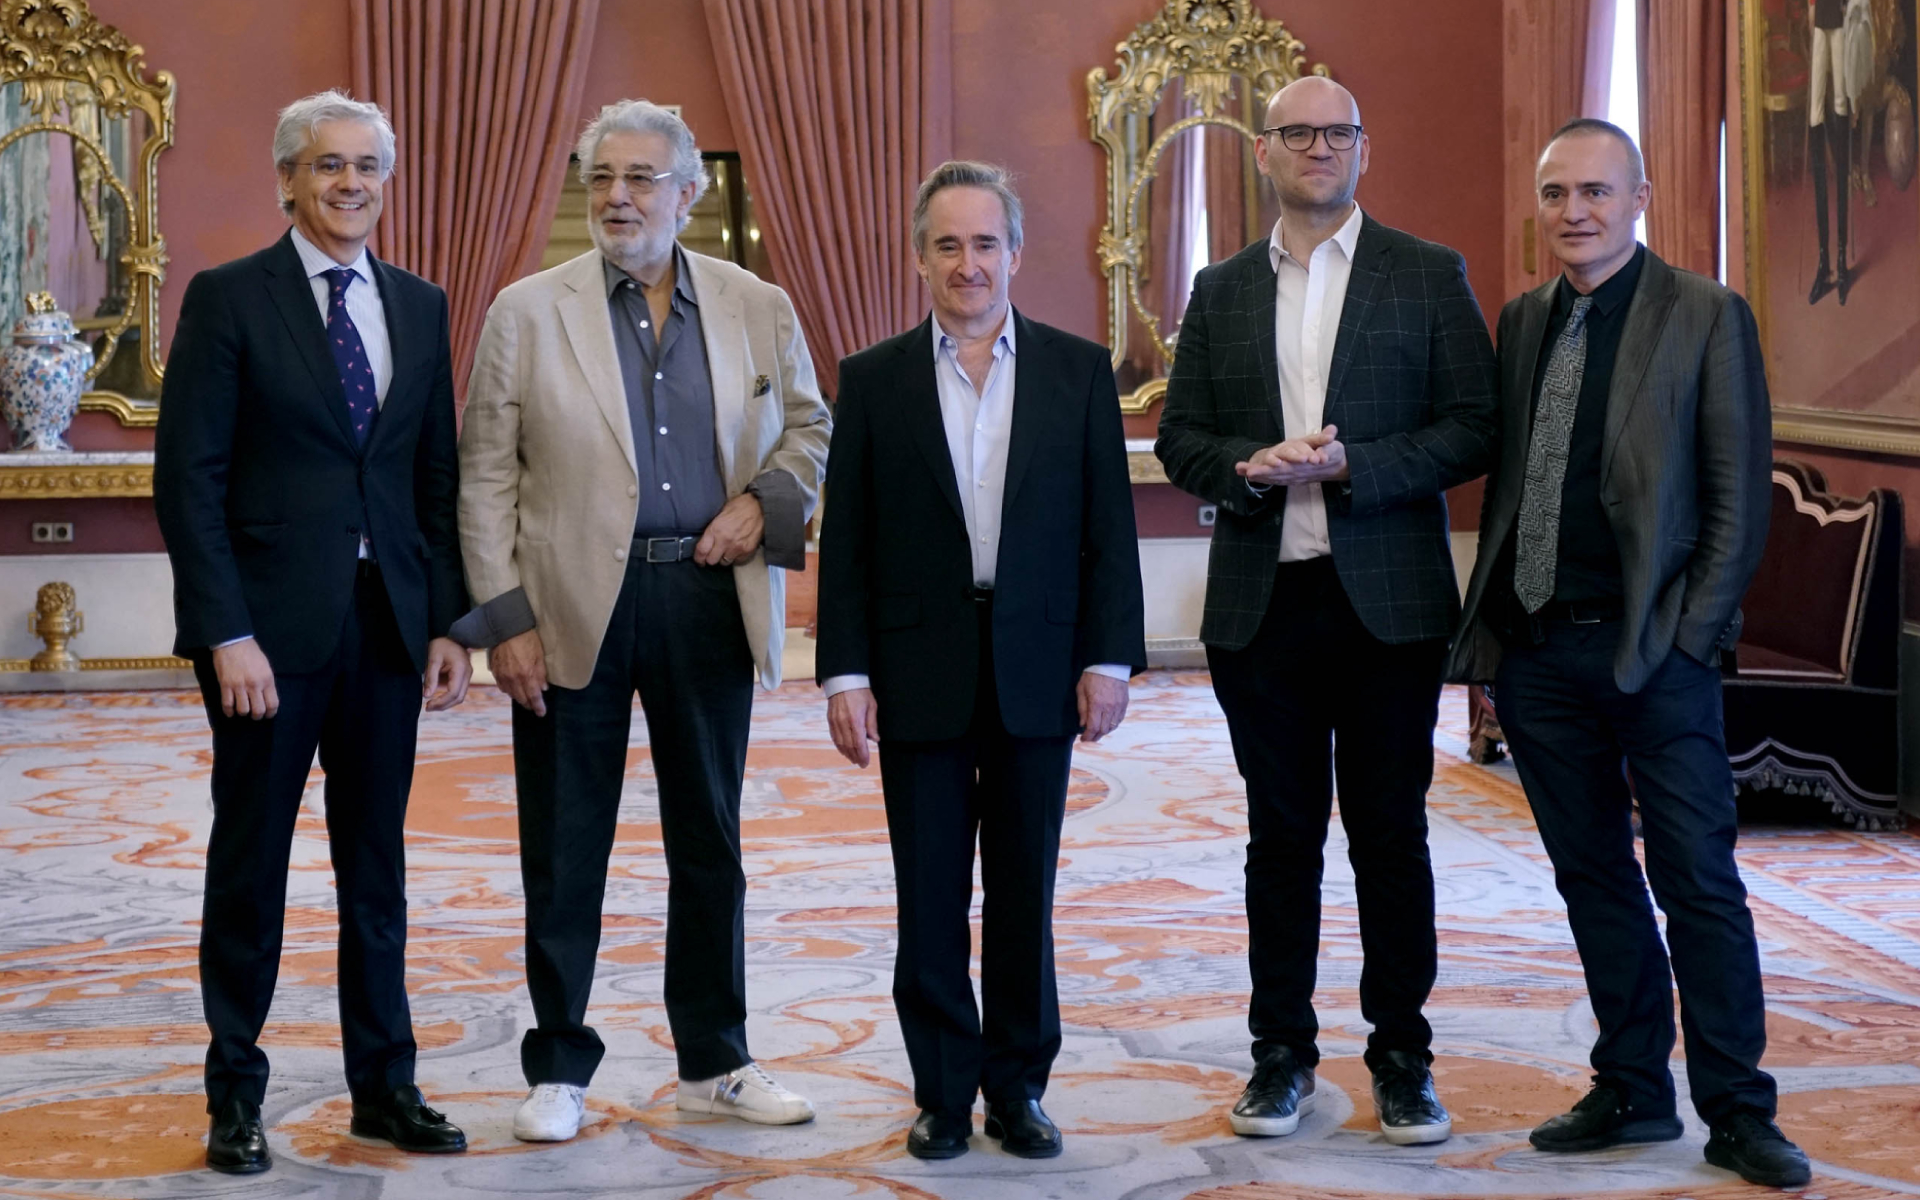 Ignacio García-Belenguer, Plácido Domingo, James Conlon, Michael Fabiano y Joan Matabosch